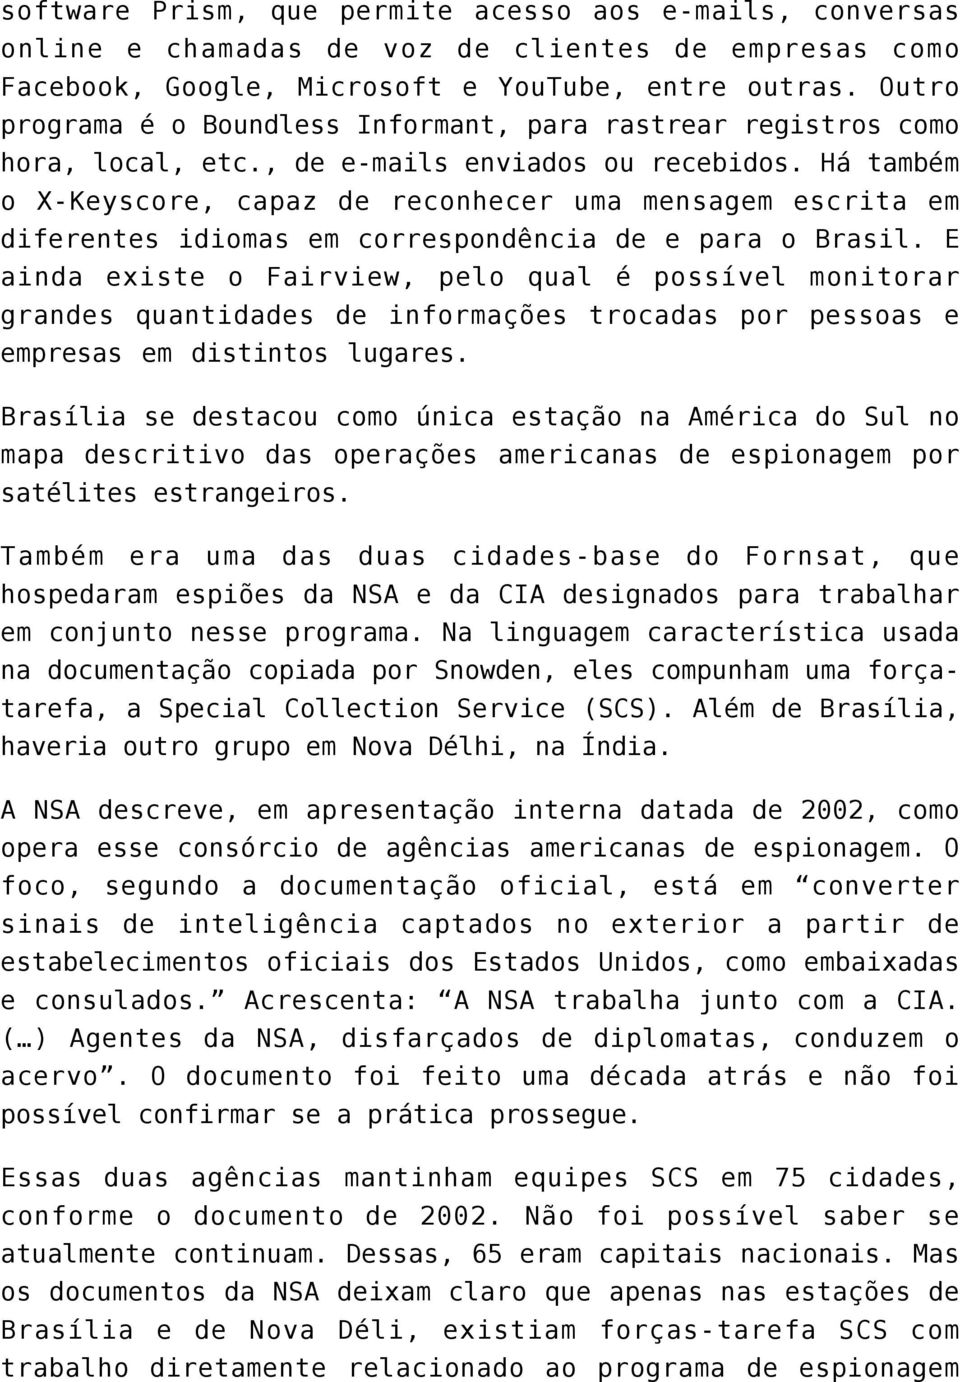 Há também o X-Keyscore, capaz de reconhecer uma mensagem escrita em diferentes idiomas em correspondência de e para o Brasil.